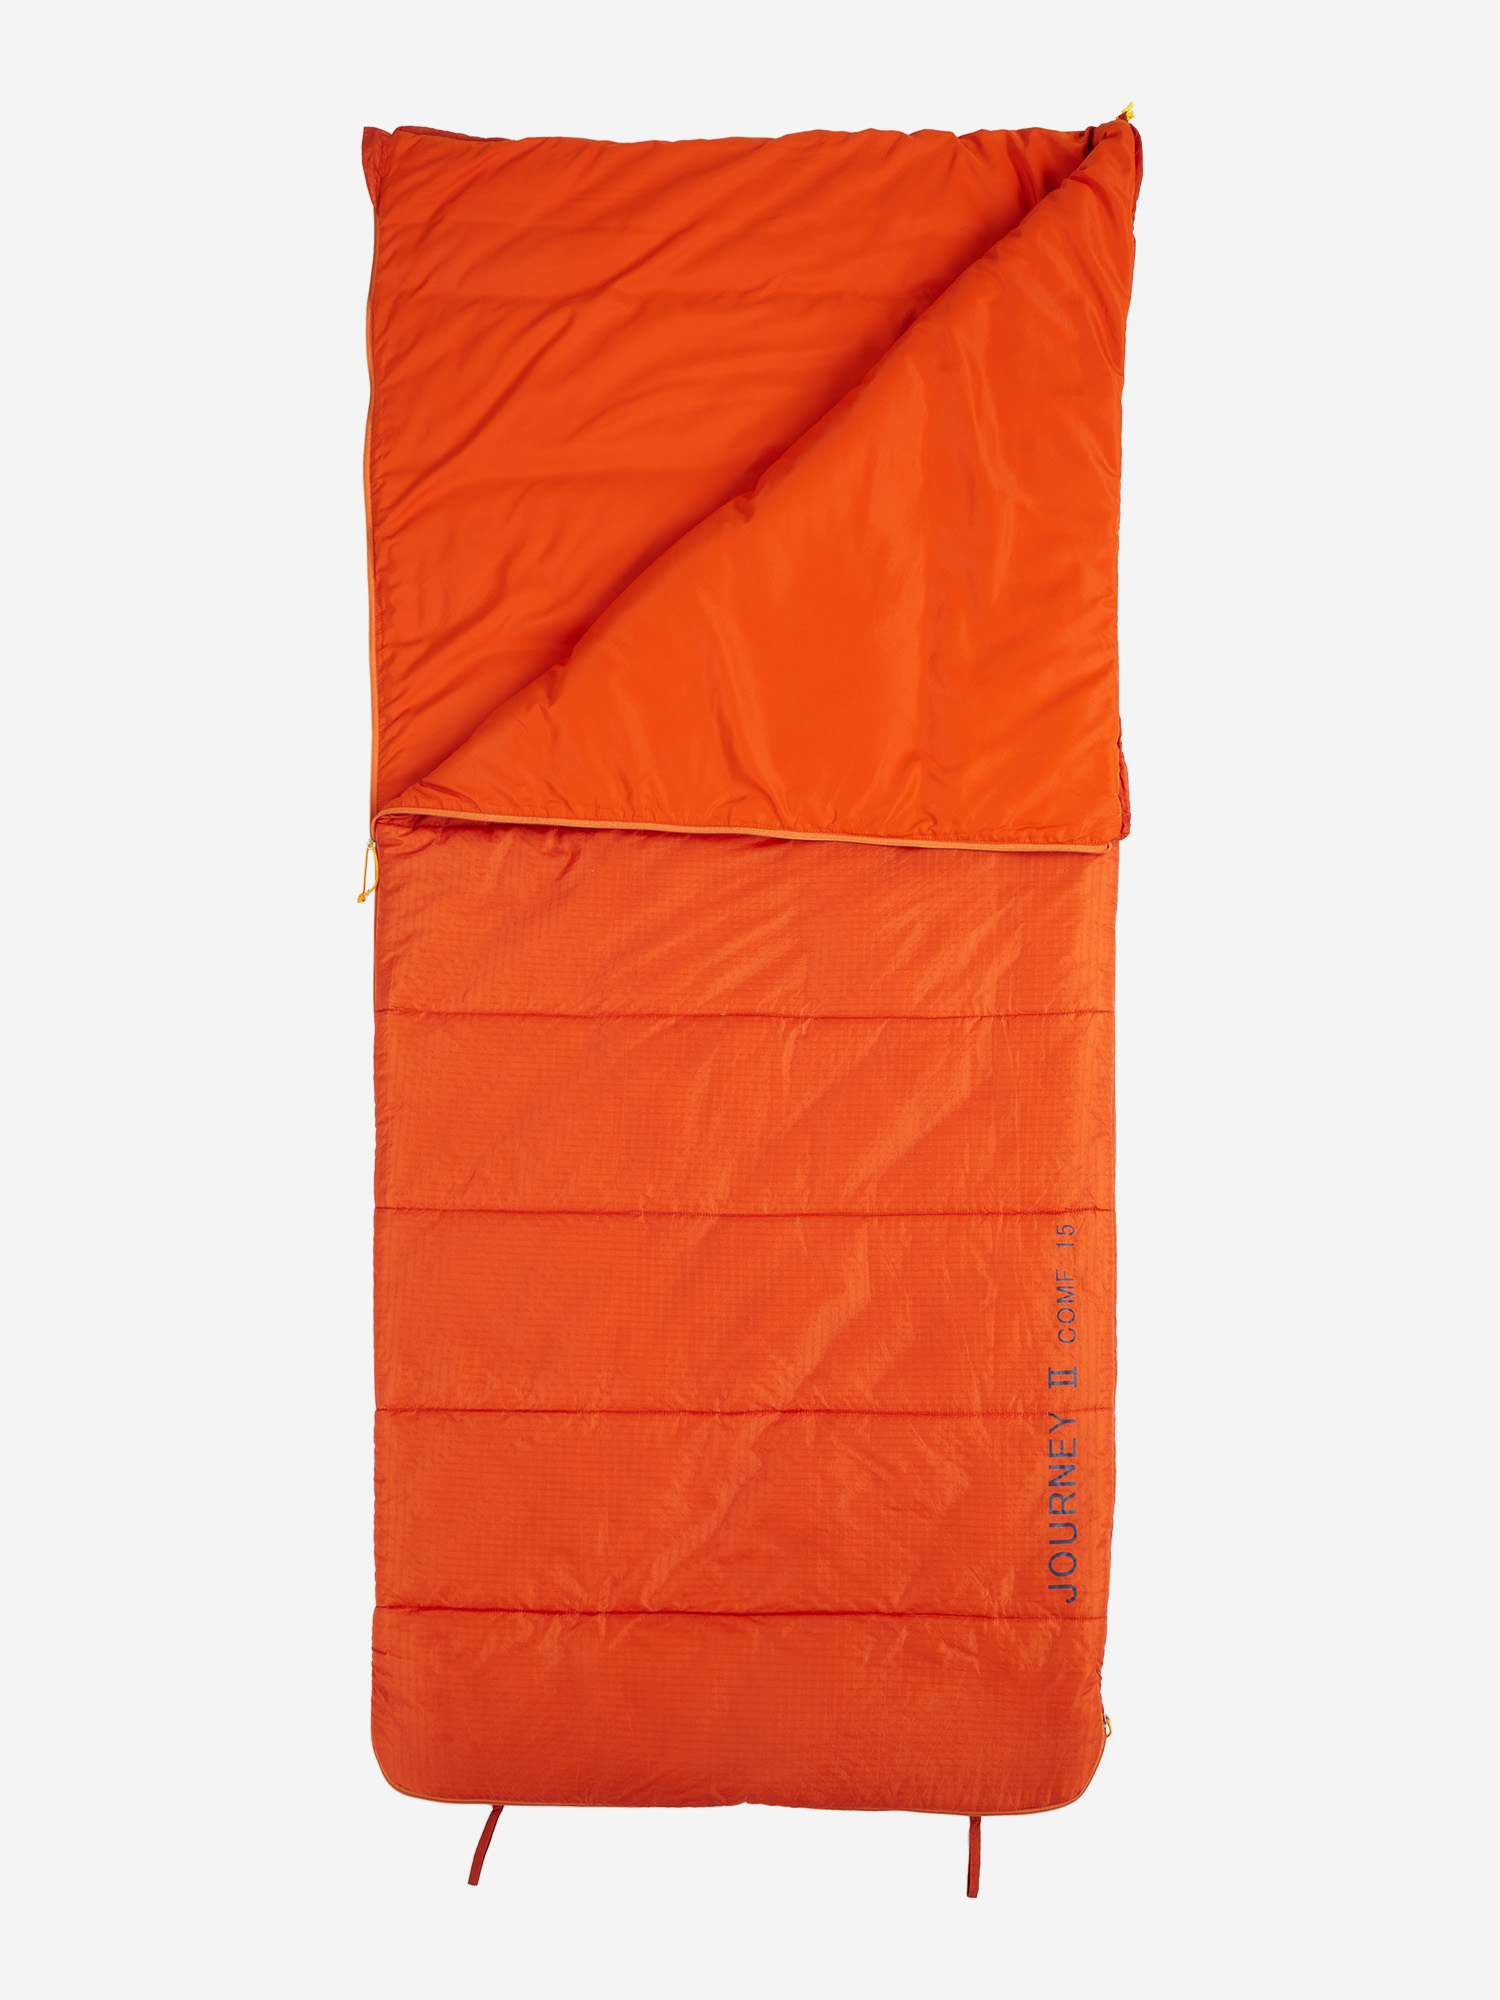 Спальный мешок Kailas Journey II +7, Оранжевый спальный мешок турист зима 300 150 позывной егерь оранжевый